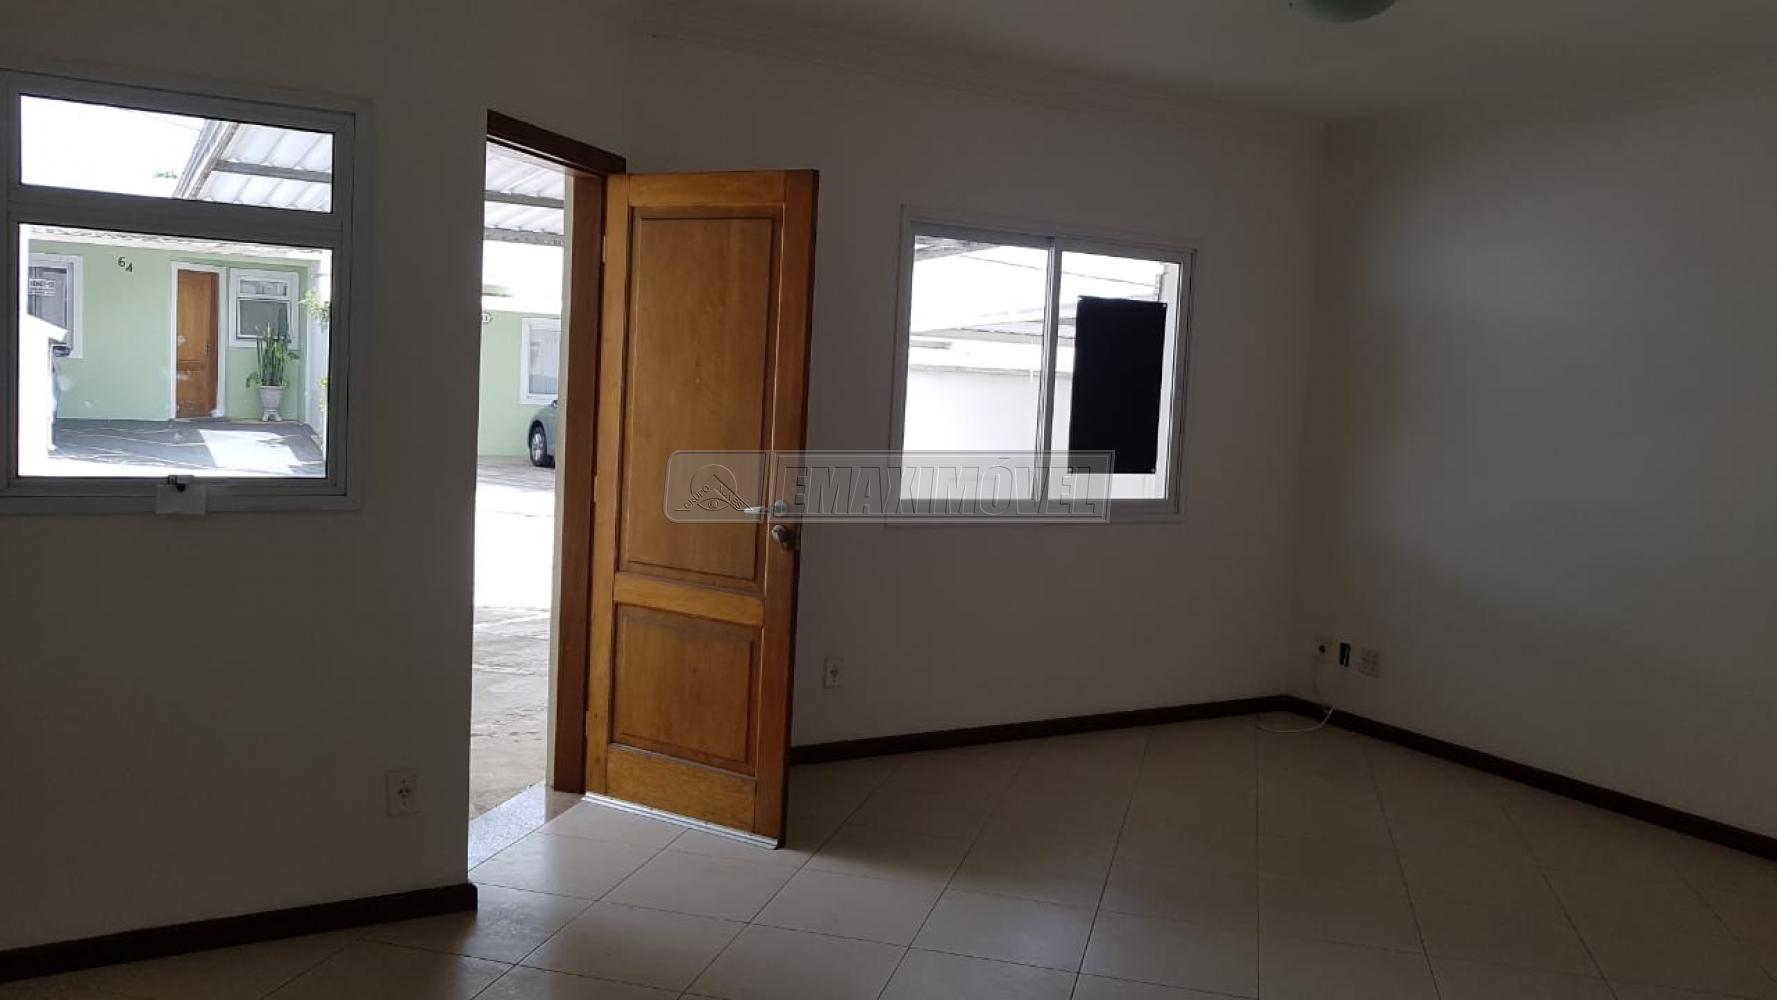 Comprar Casa / em Condomínios em Sorocaba R$ 376.000,00 - Foto 2